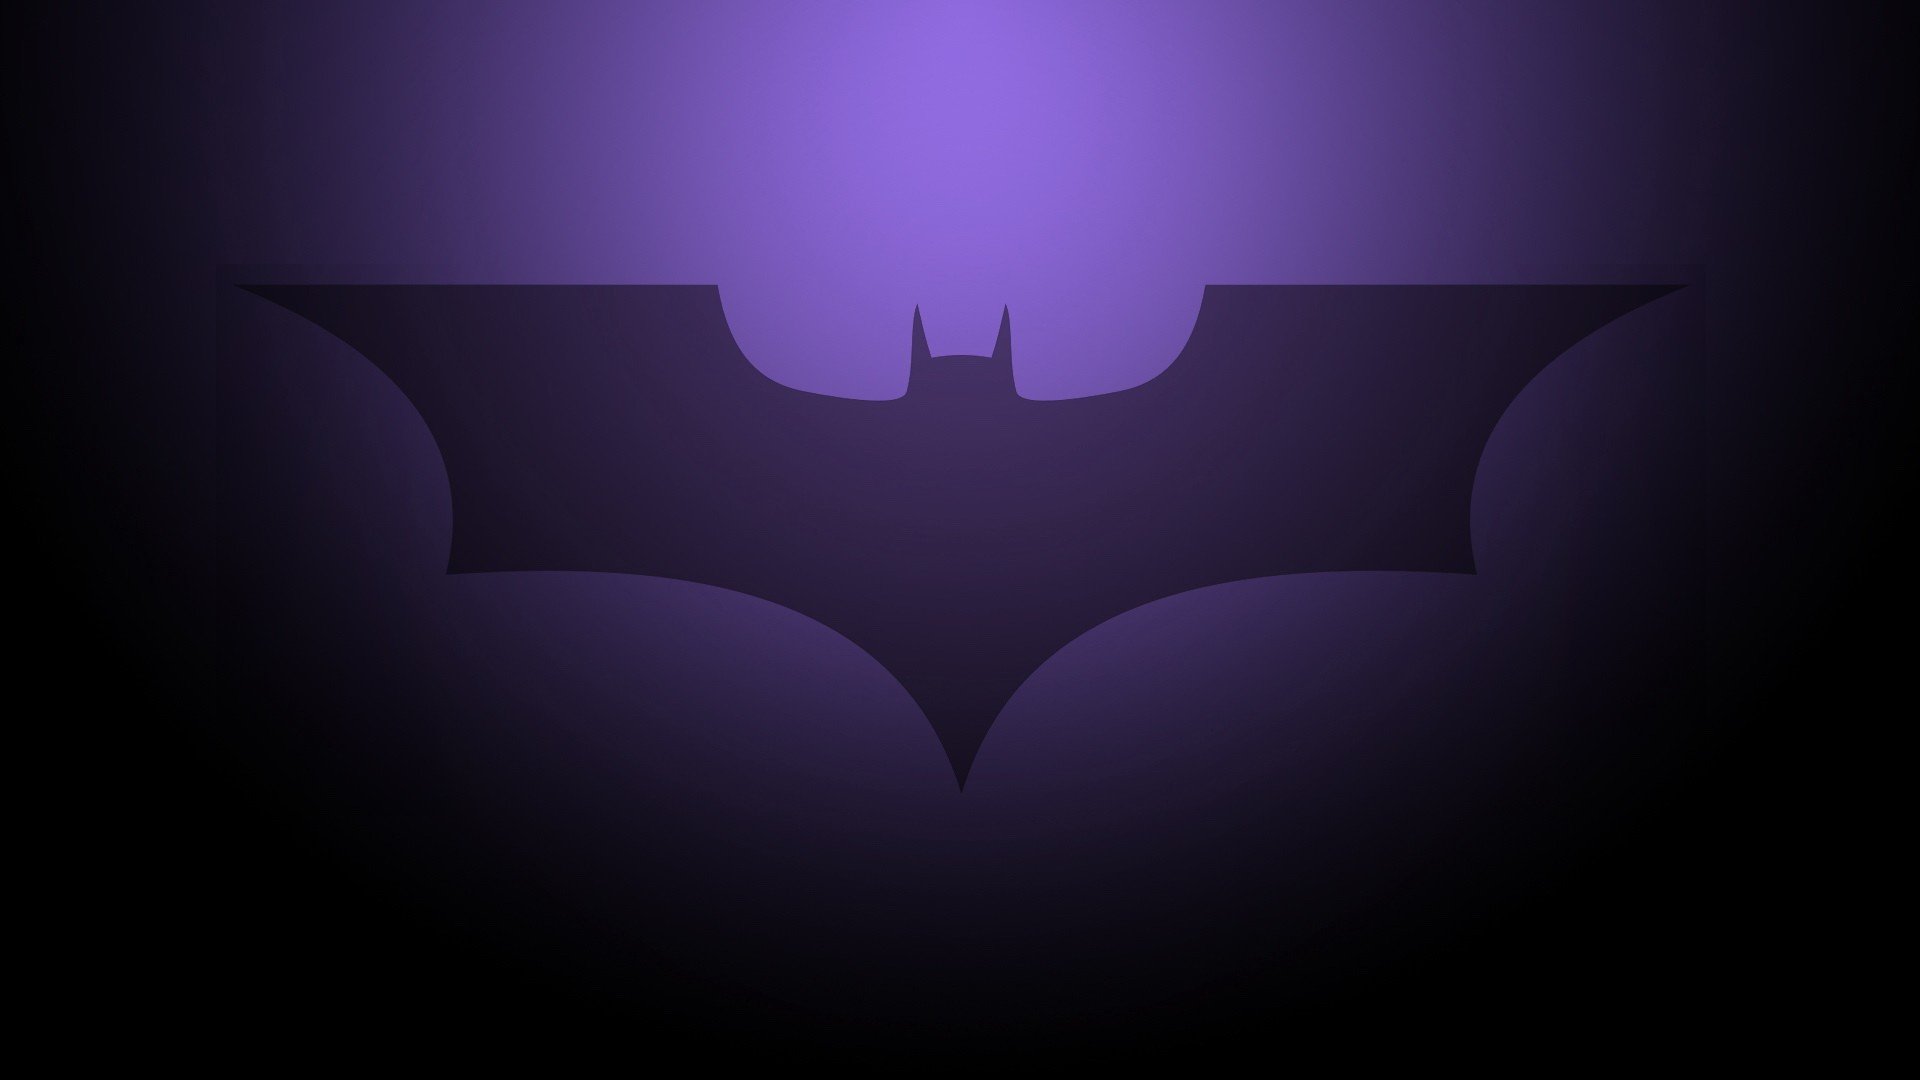 Batman in Night Purple City Desktop Wallpaper - Batman Wallpaper